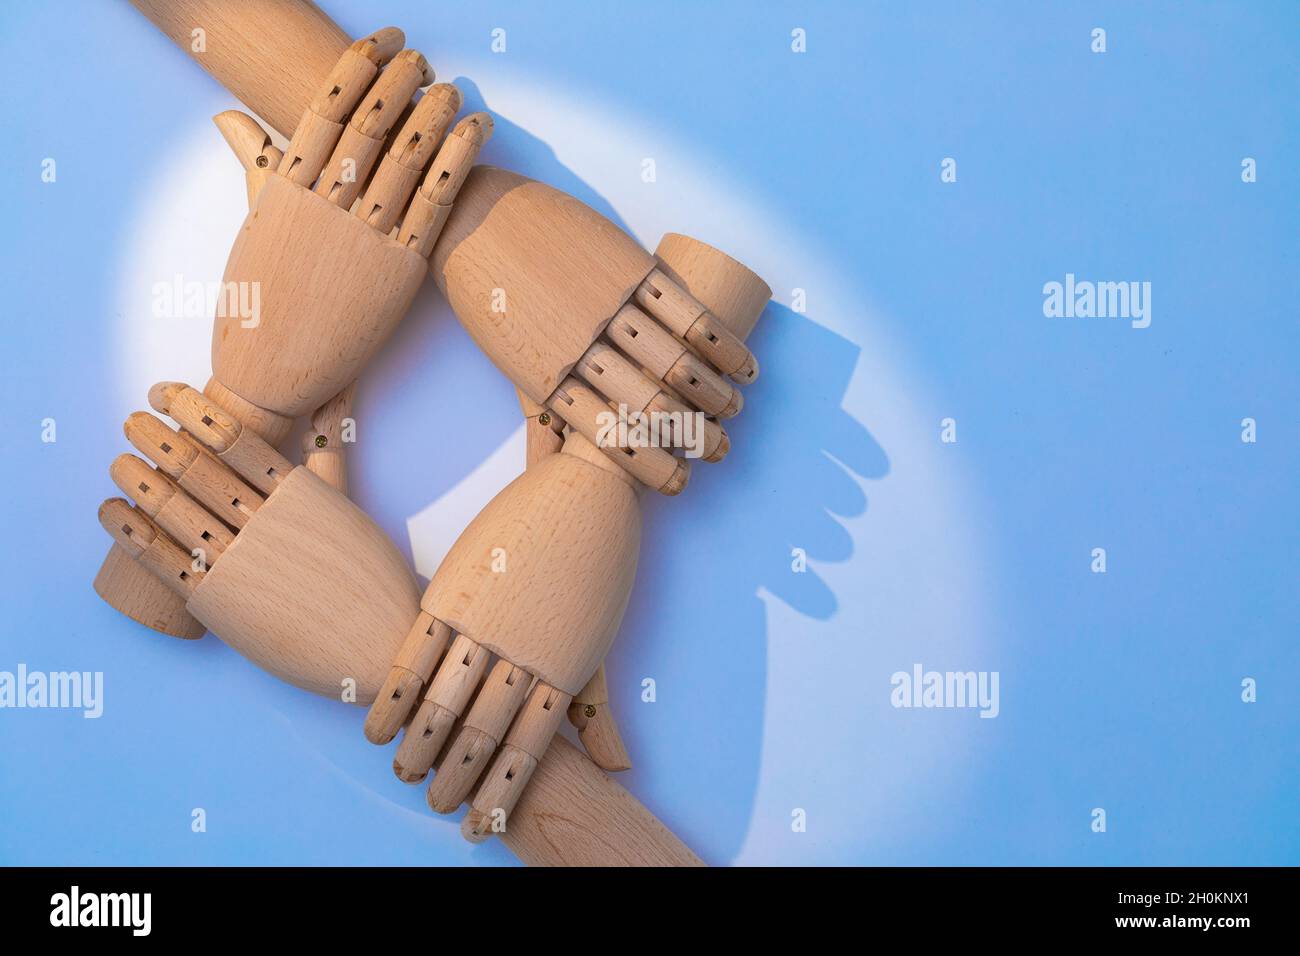 Nahaufnahme der Hände, die sich halten. Zwei Paar prothetische Hände aus Holz sind versetzt angeordnet, um ein kooperatives Erscheinungsbild zu schaffen. Eine Kombination aus Holz ha Stockfoto